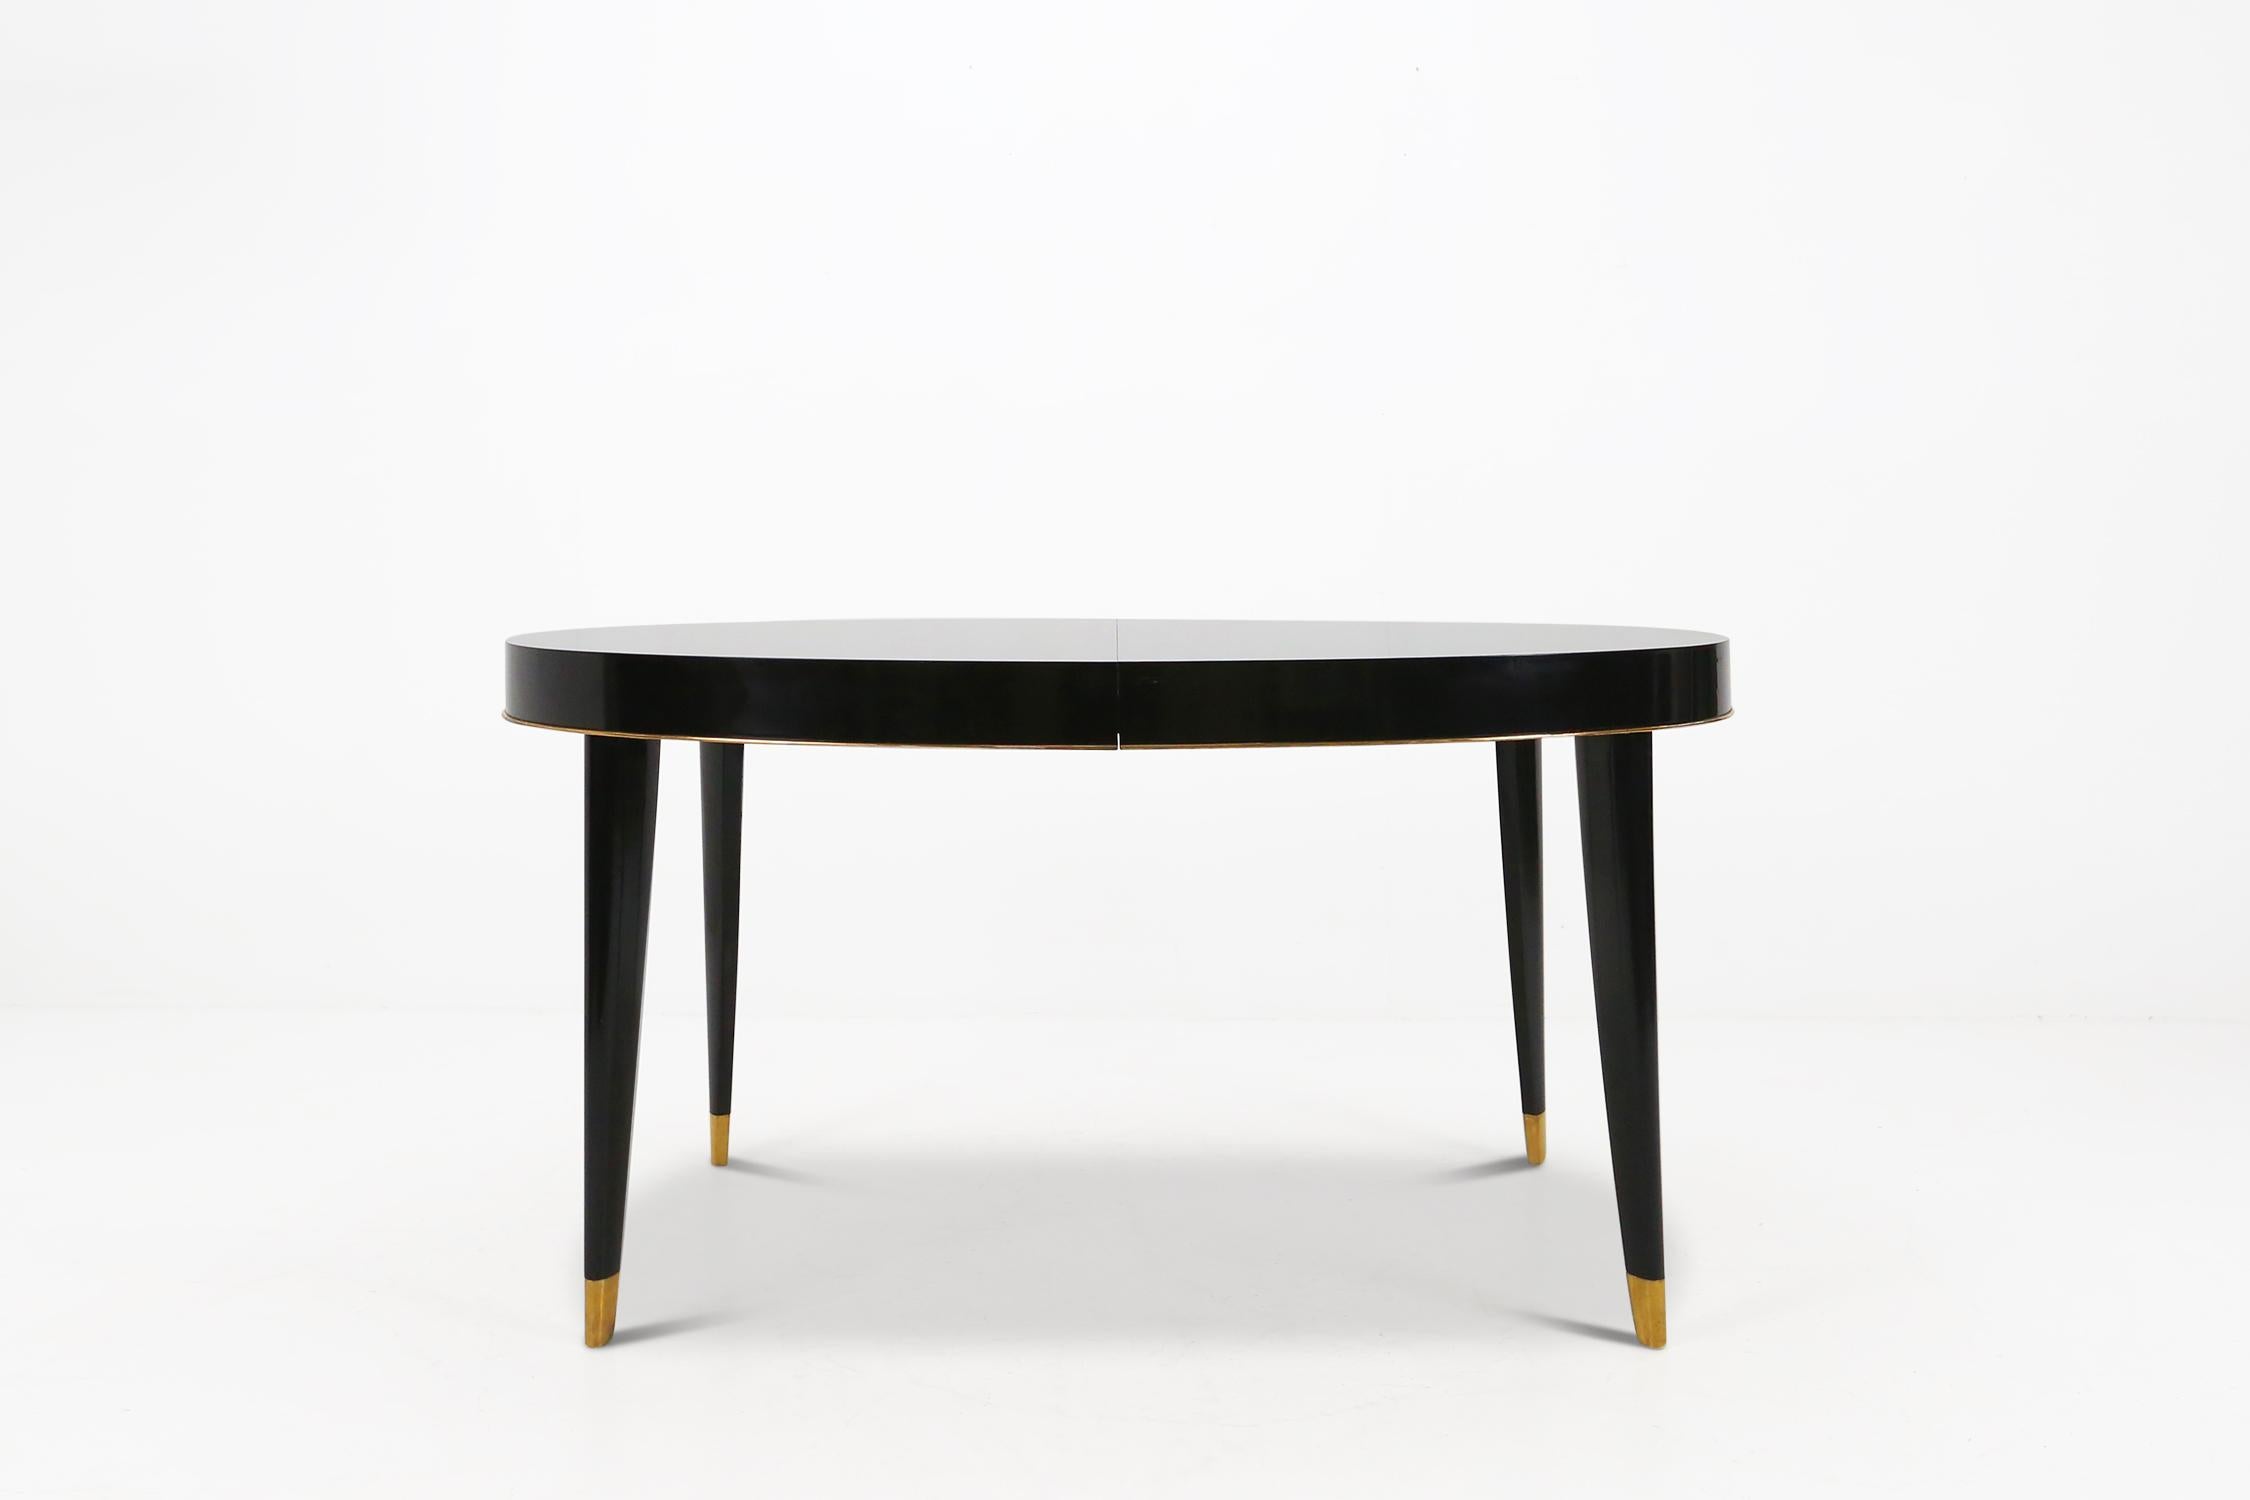 Table de salle à manger Art Déco par De Coene Belgique, fabriquée vers 1940.
Fabriqué en bois laqué piano noir et pieds en laiton poli.
Les extensions de la table ne sont plus présentes.